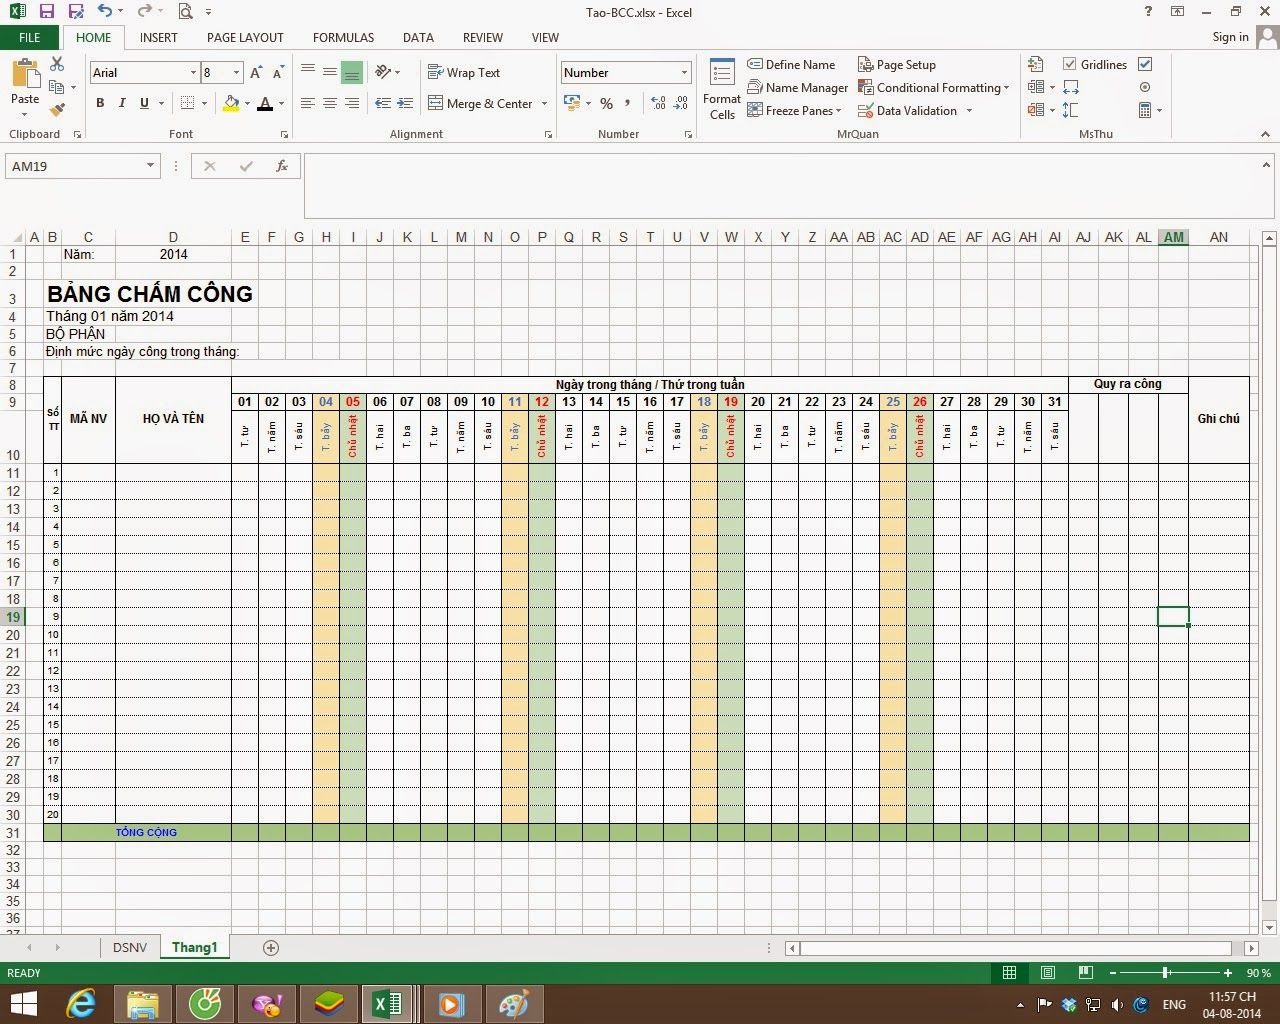 Cách tính bảng chấm công trong excel được thực hiện như thế nào? Hướng dẫn cách tạo bảng chấm công trên Excel chi tiết nhất 45